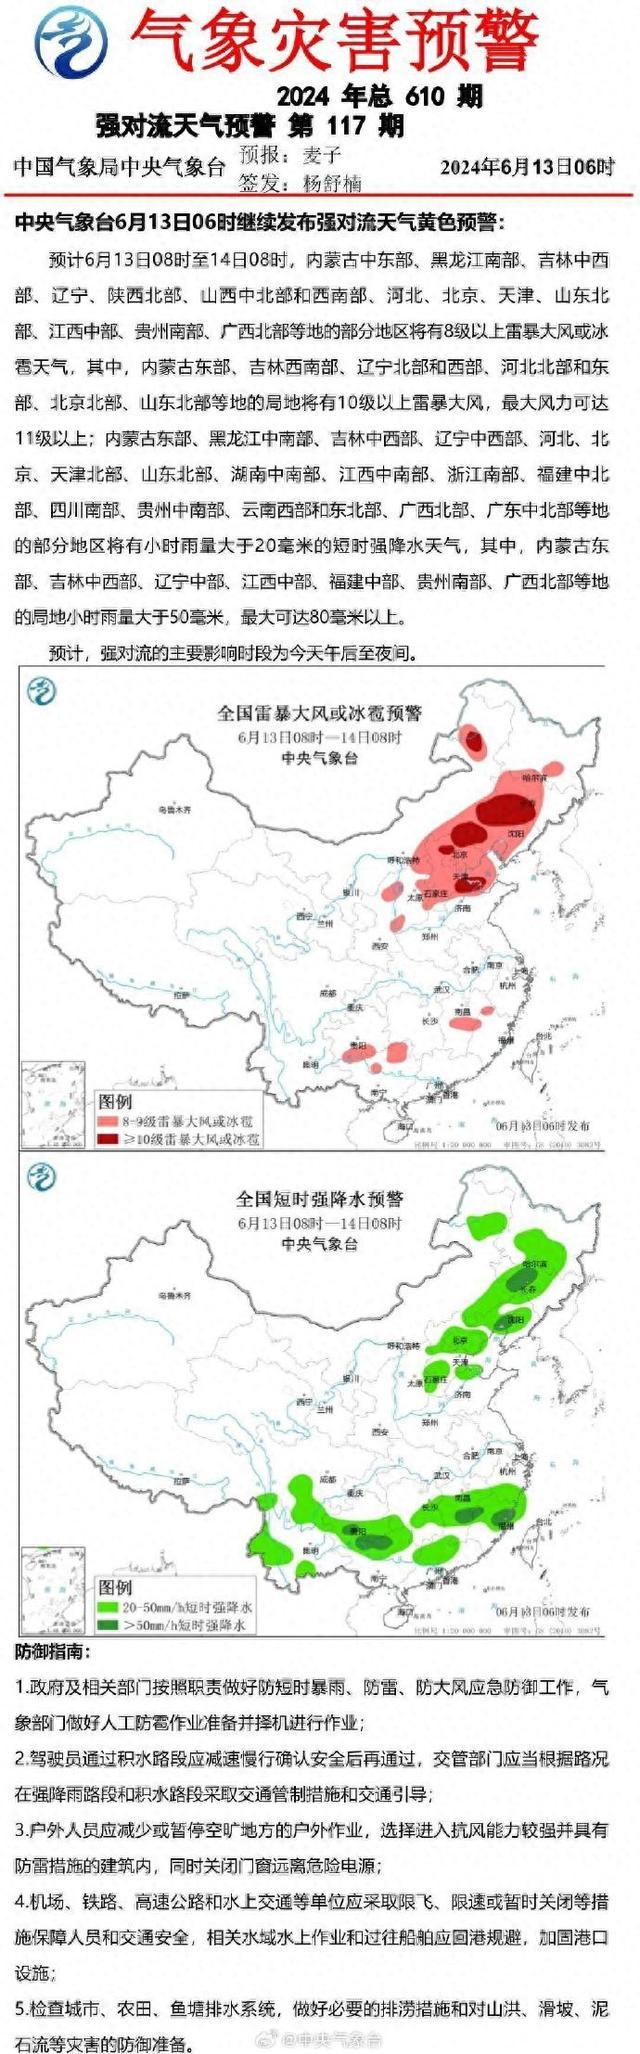 北京北部等地局地将有10级以上雷暴大风 强对流天气预警